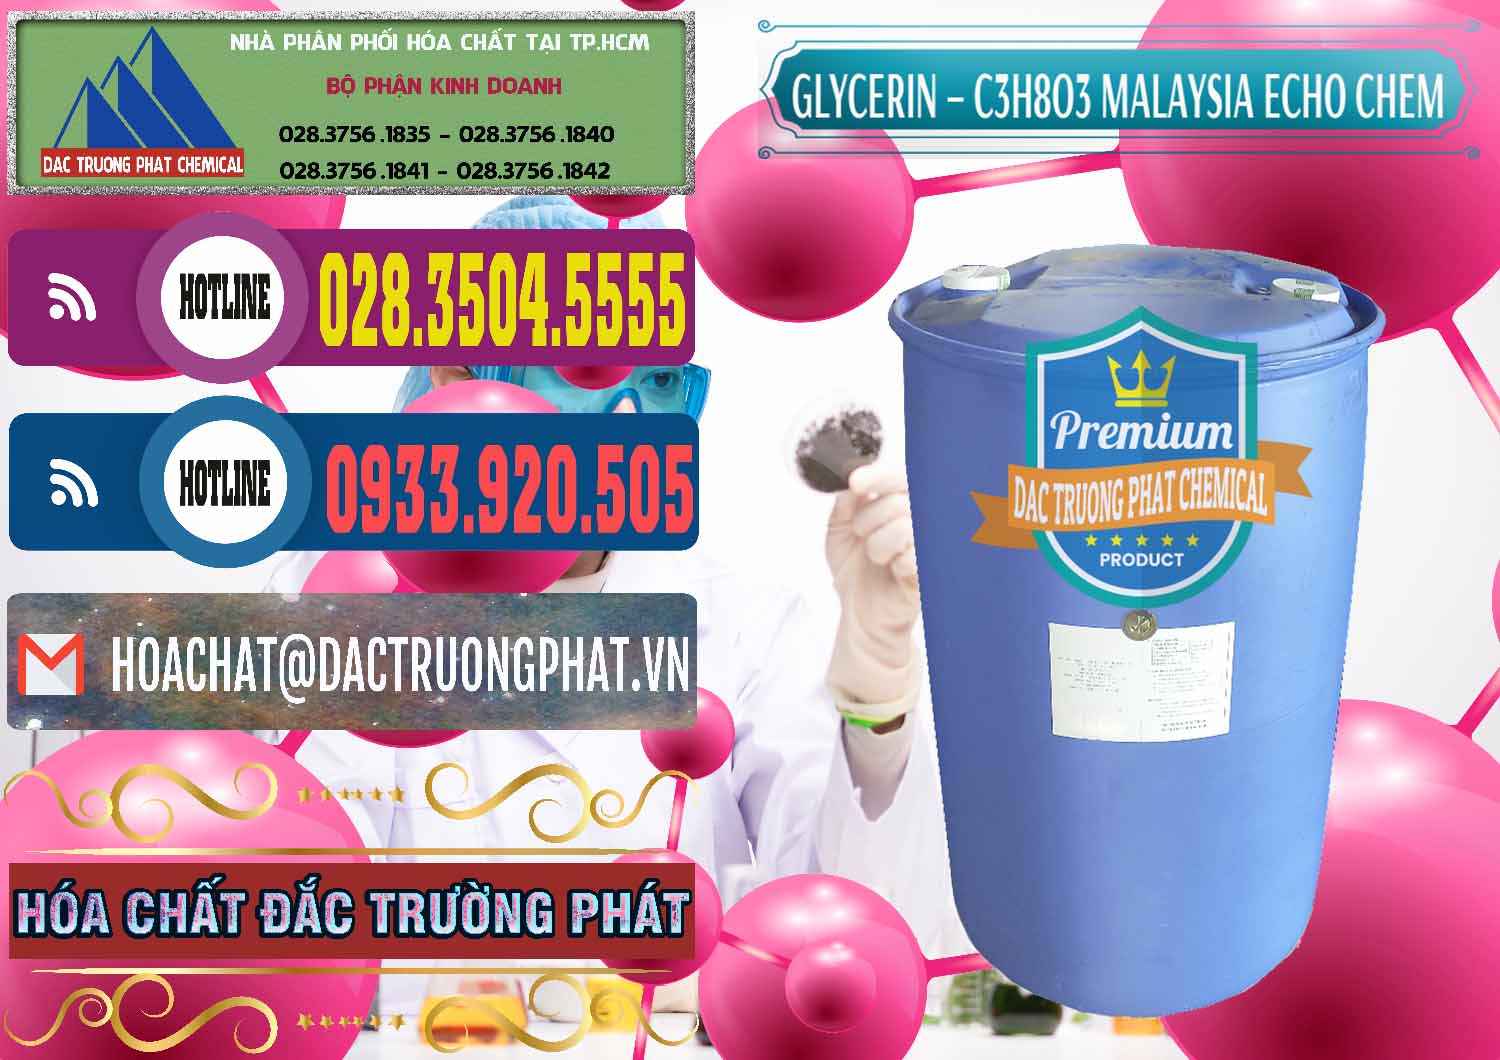 Đơn vị phân phối _ bán C3H8O3 - Glycerin 99.7% Echo Chem Malaysia - 0273 - Phân phối và bán hóa chất tại TP.HCM - muabanhoachat.com.vn